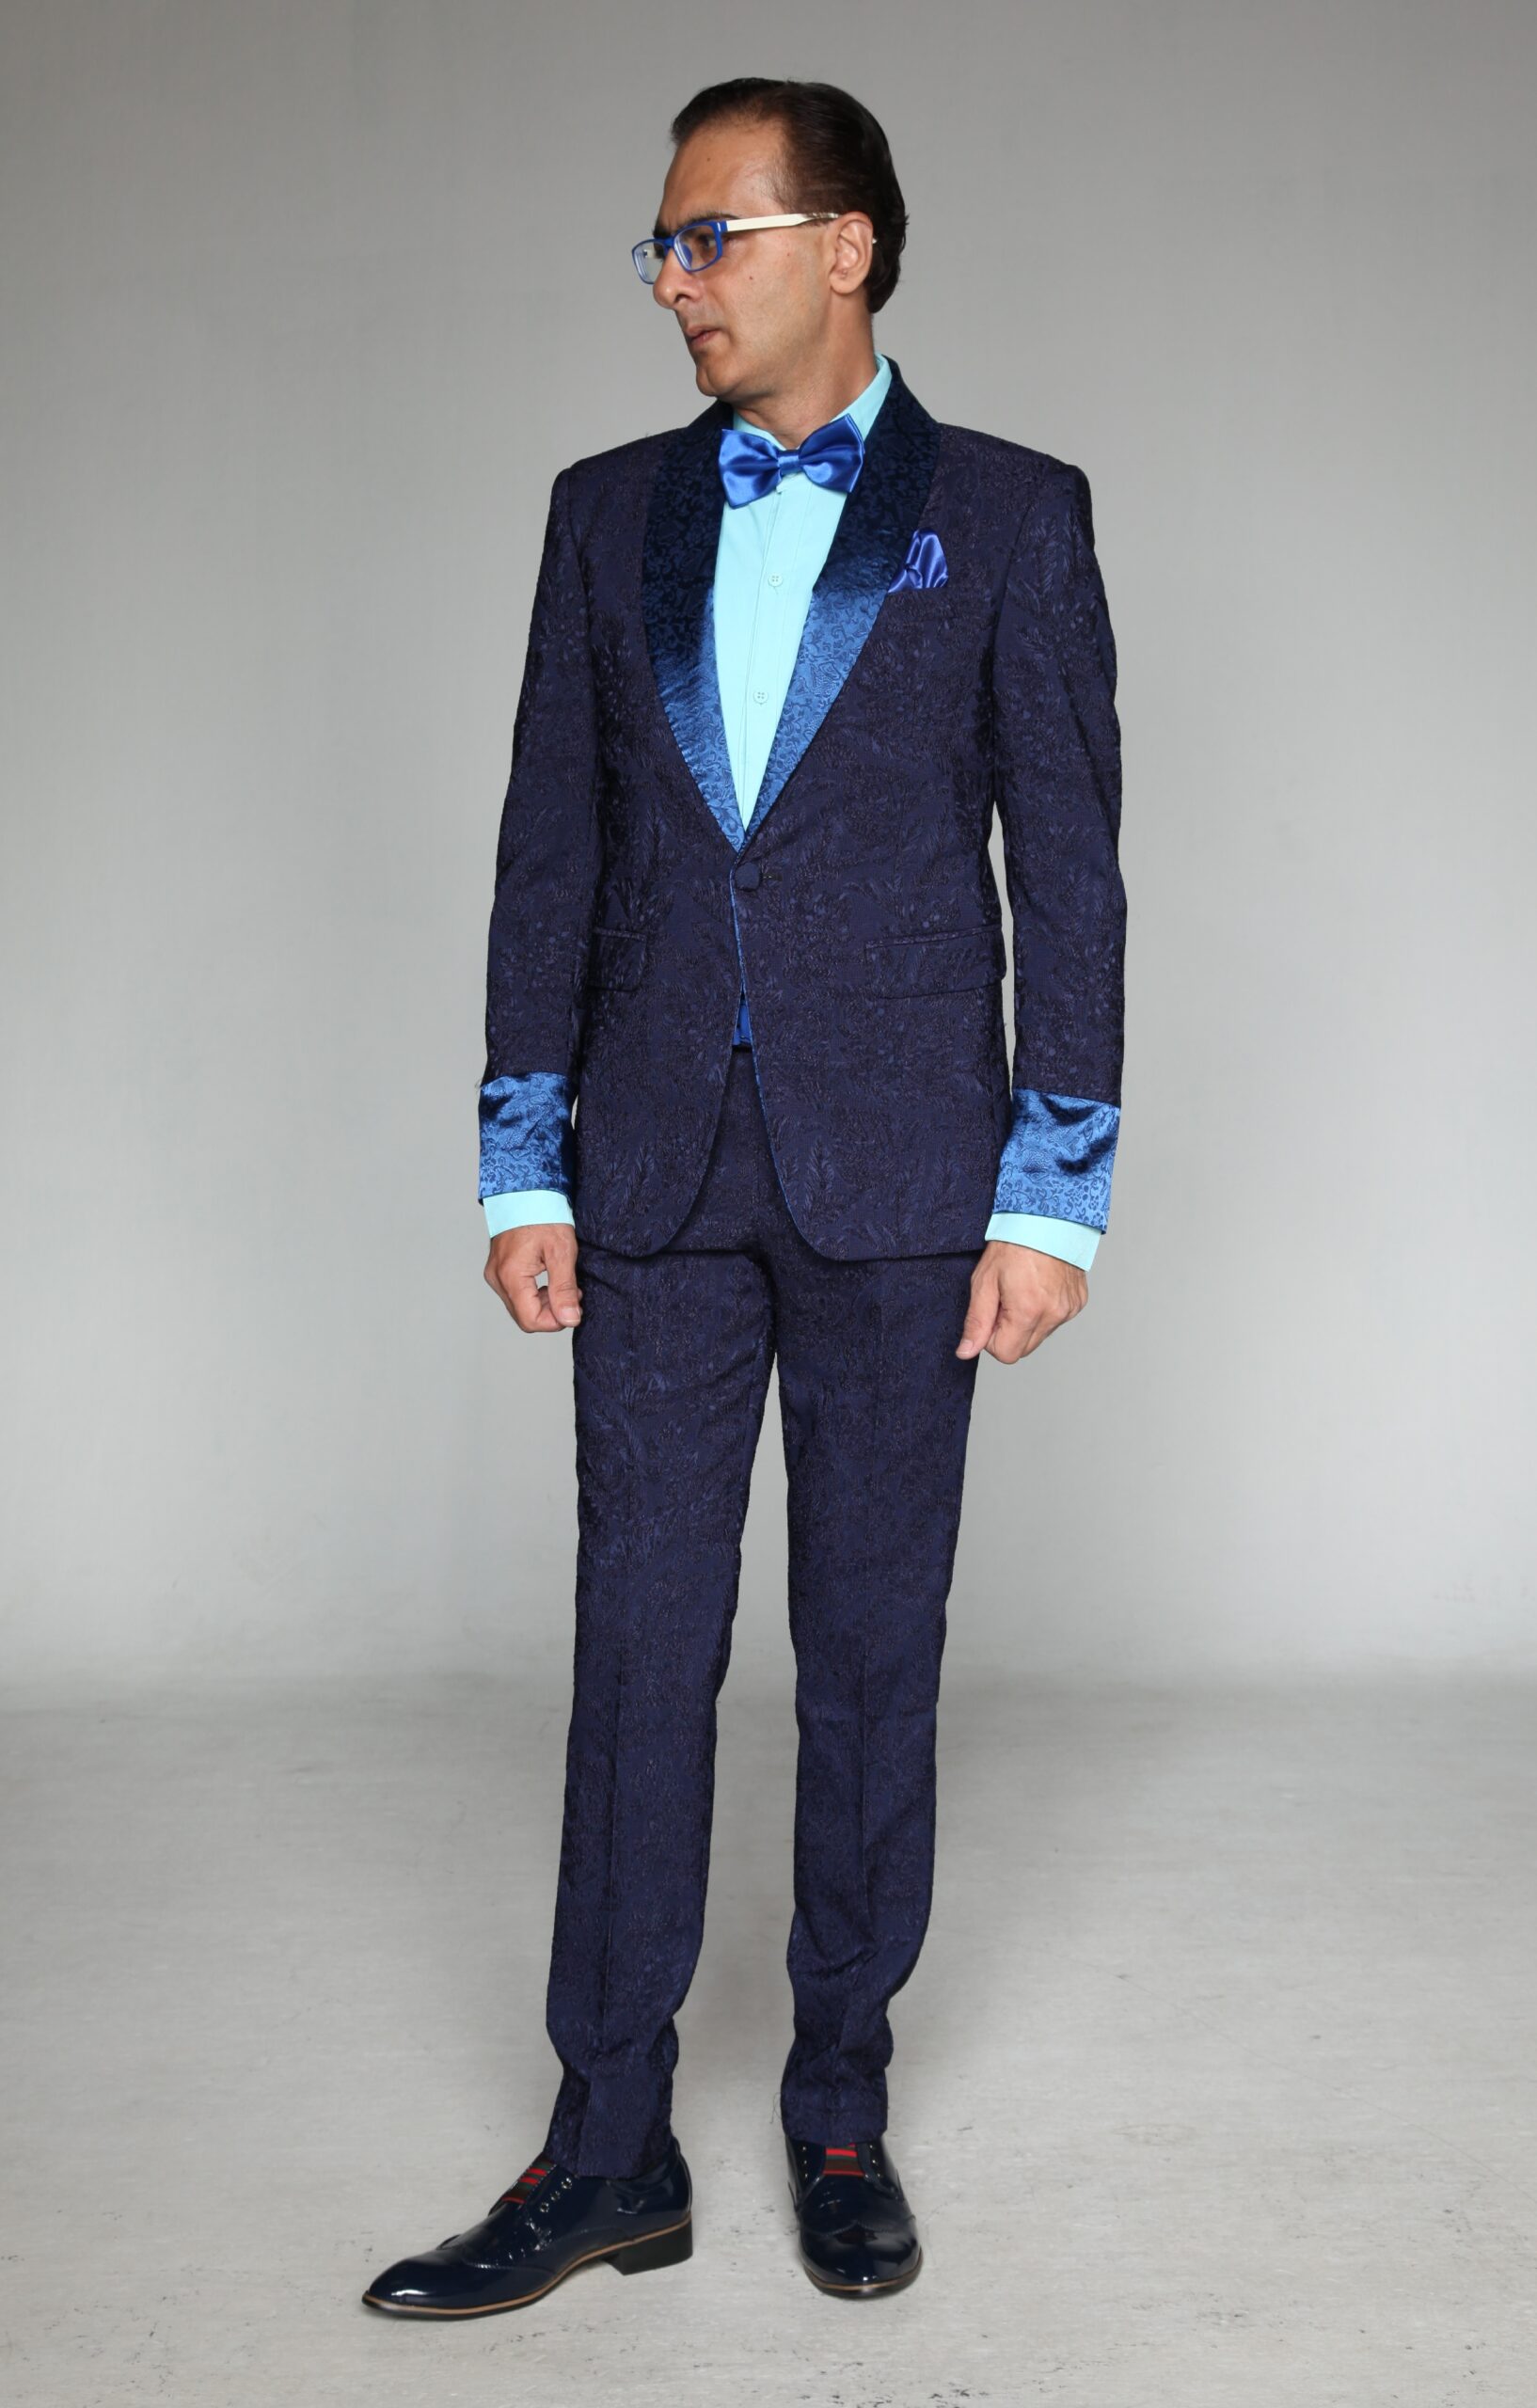 MST-5023-03-rent_rental_hire_tuxedo_suit_black_tie_suit_designer_suits_shop_tailor_tailors_singapore_wedding